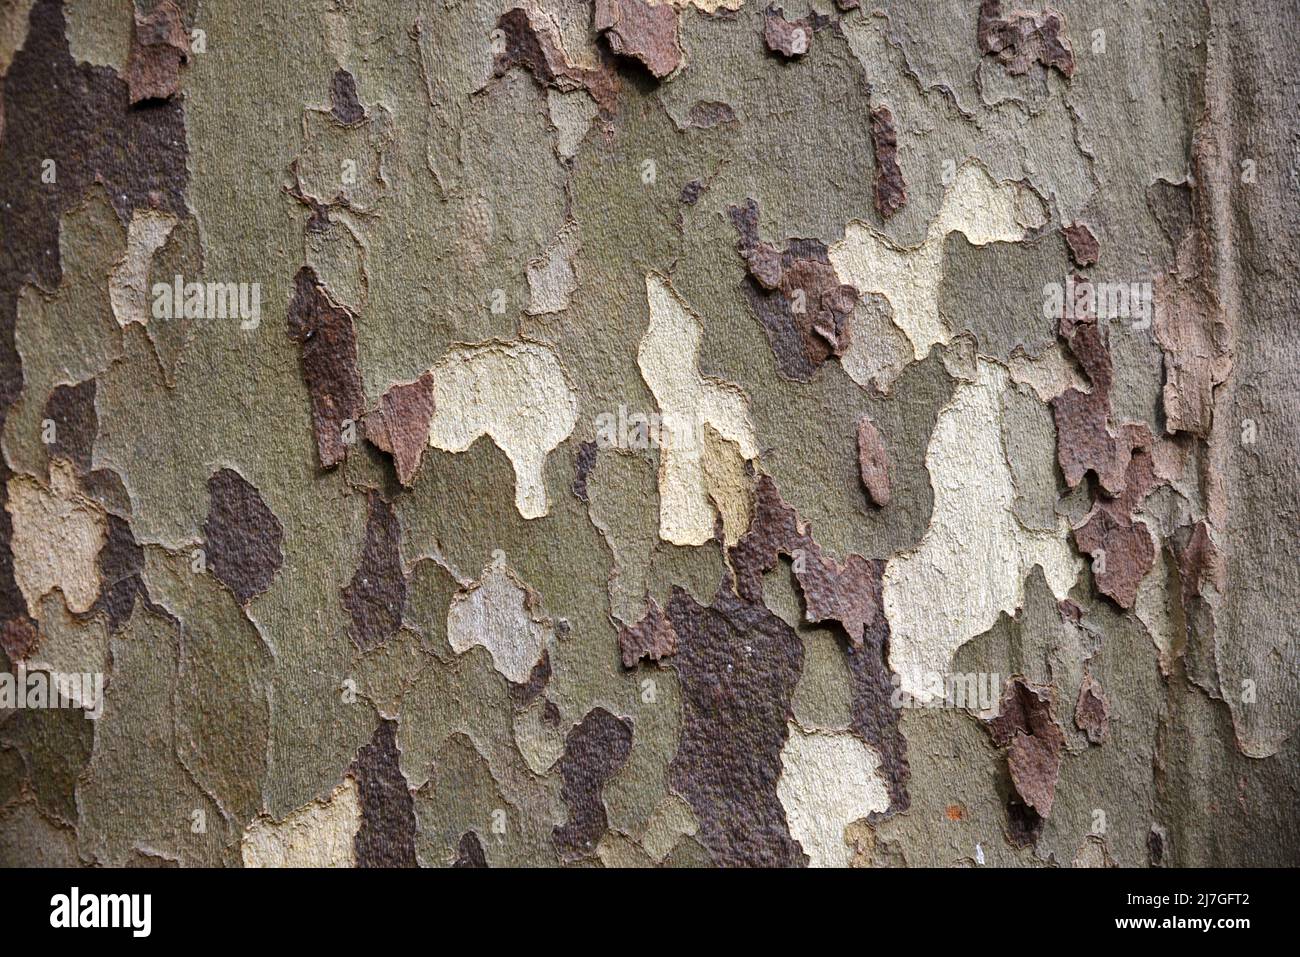 Patrón de camuflaje de corteza de peeling del árbol del plano común, Platanus x acerifolia o Platanus x hispanica, o árbol del plano híbrido Foto de stock